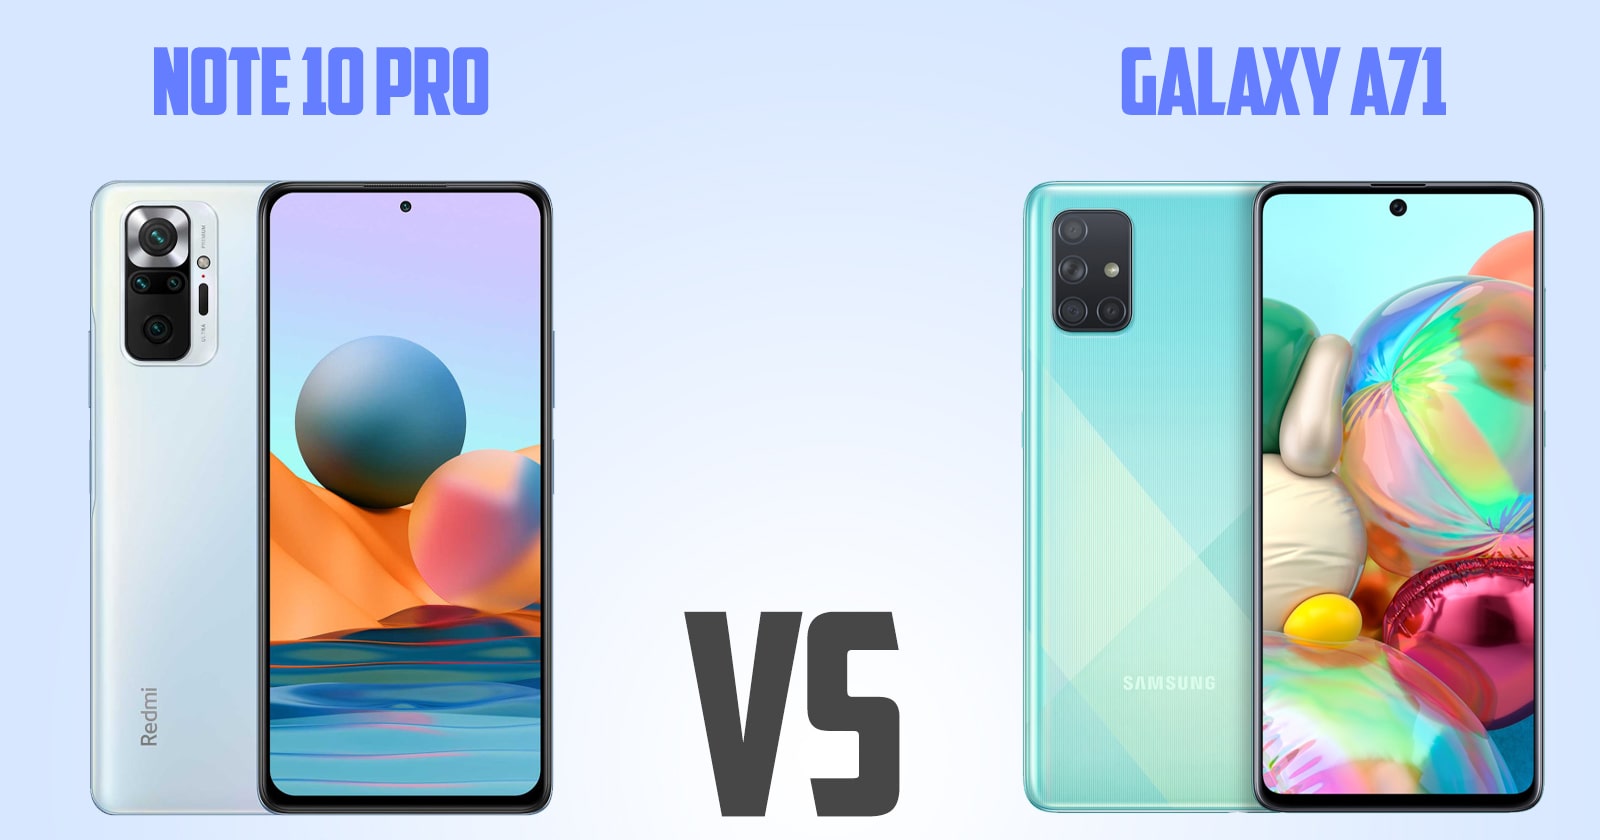 Redmi note 10 pro vs Samsung Galaxy A71